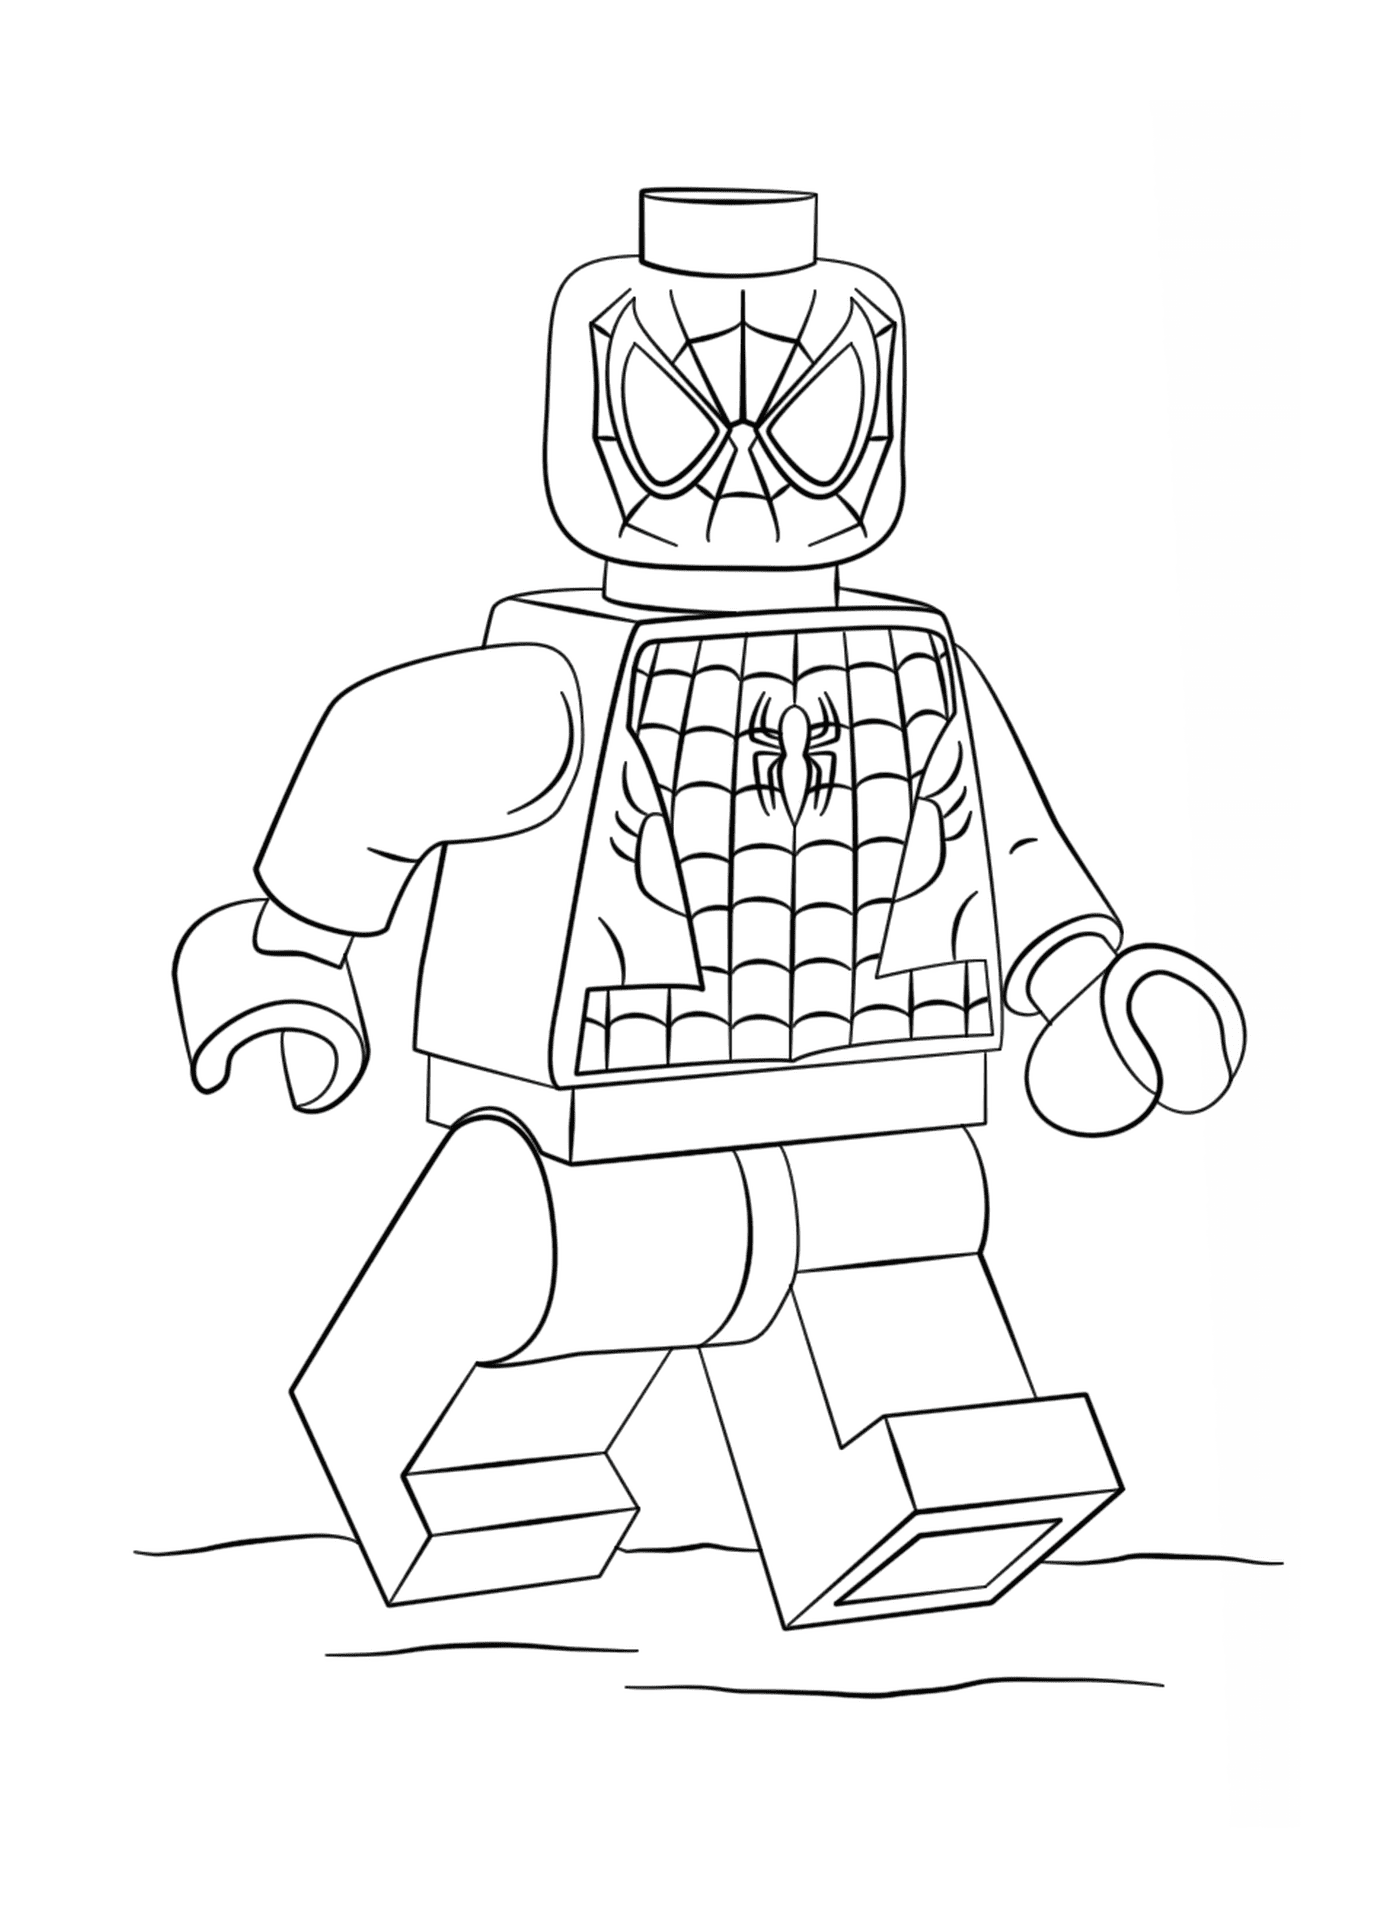  Homem-Aranha, o herói Lego 